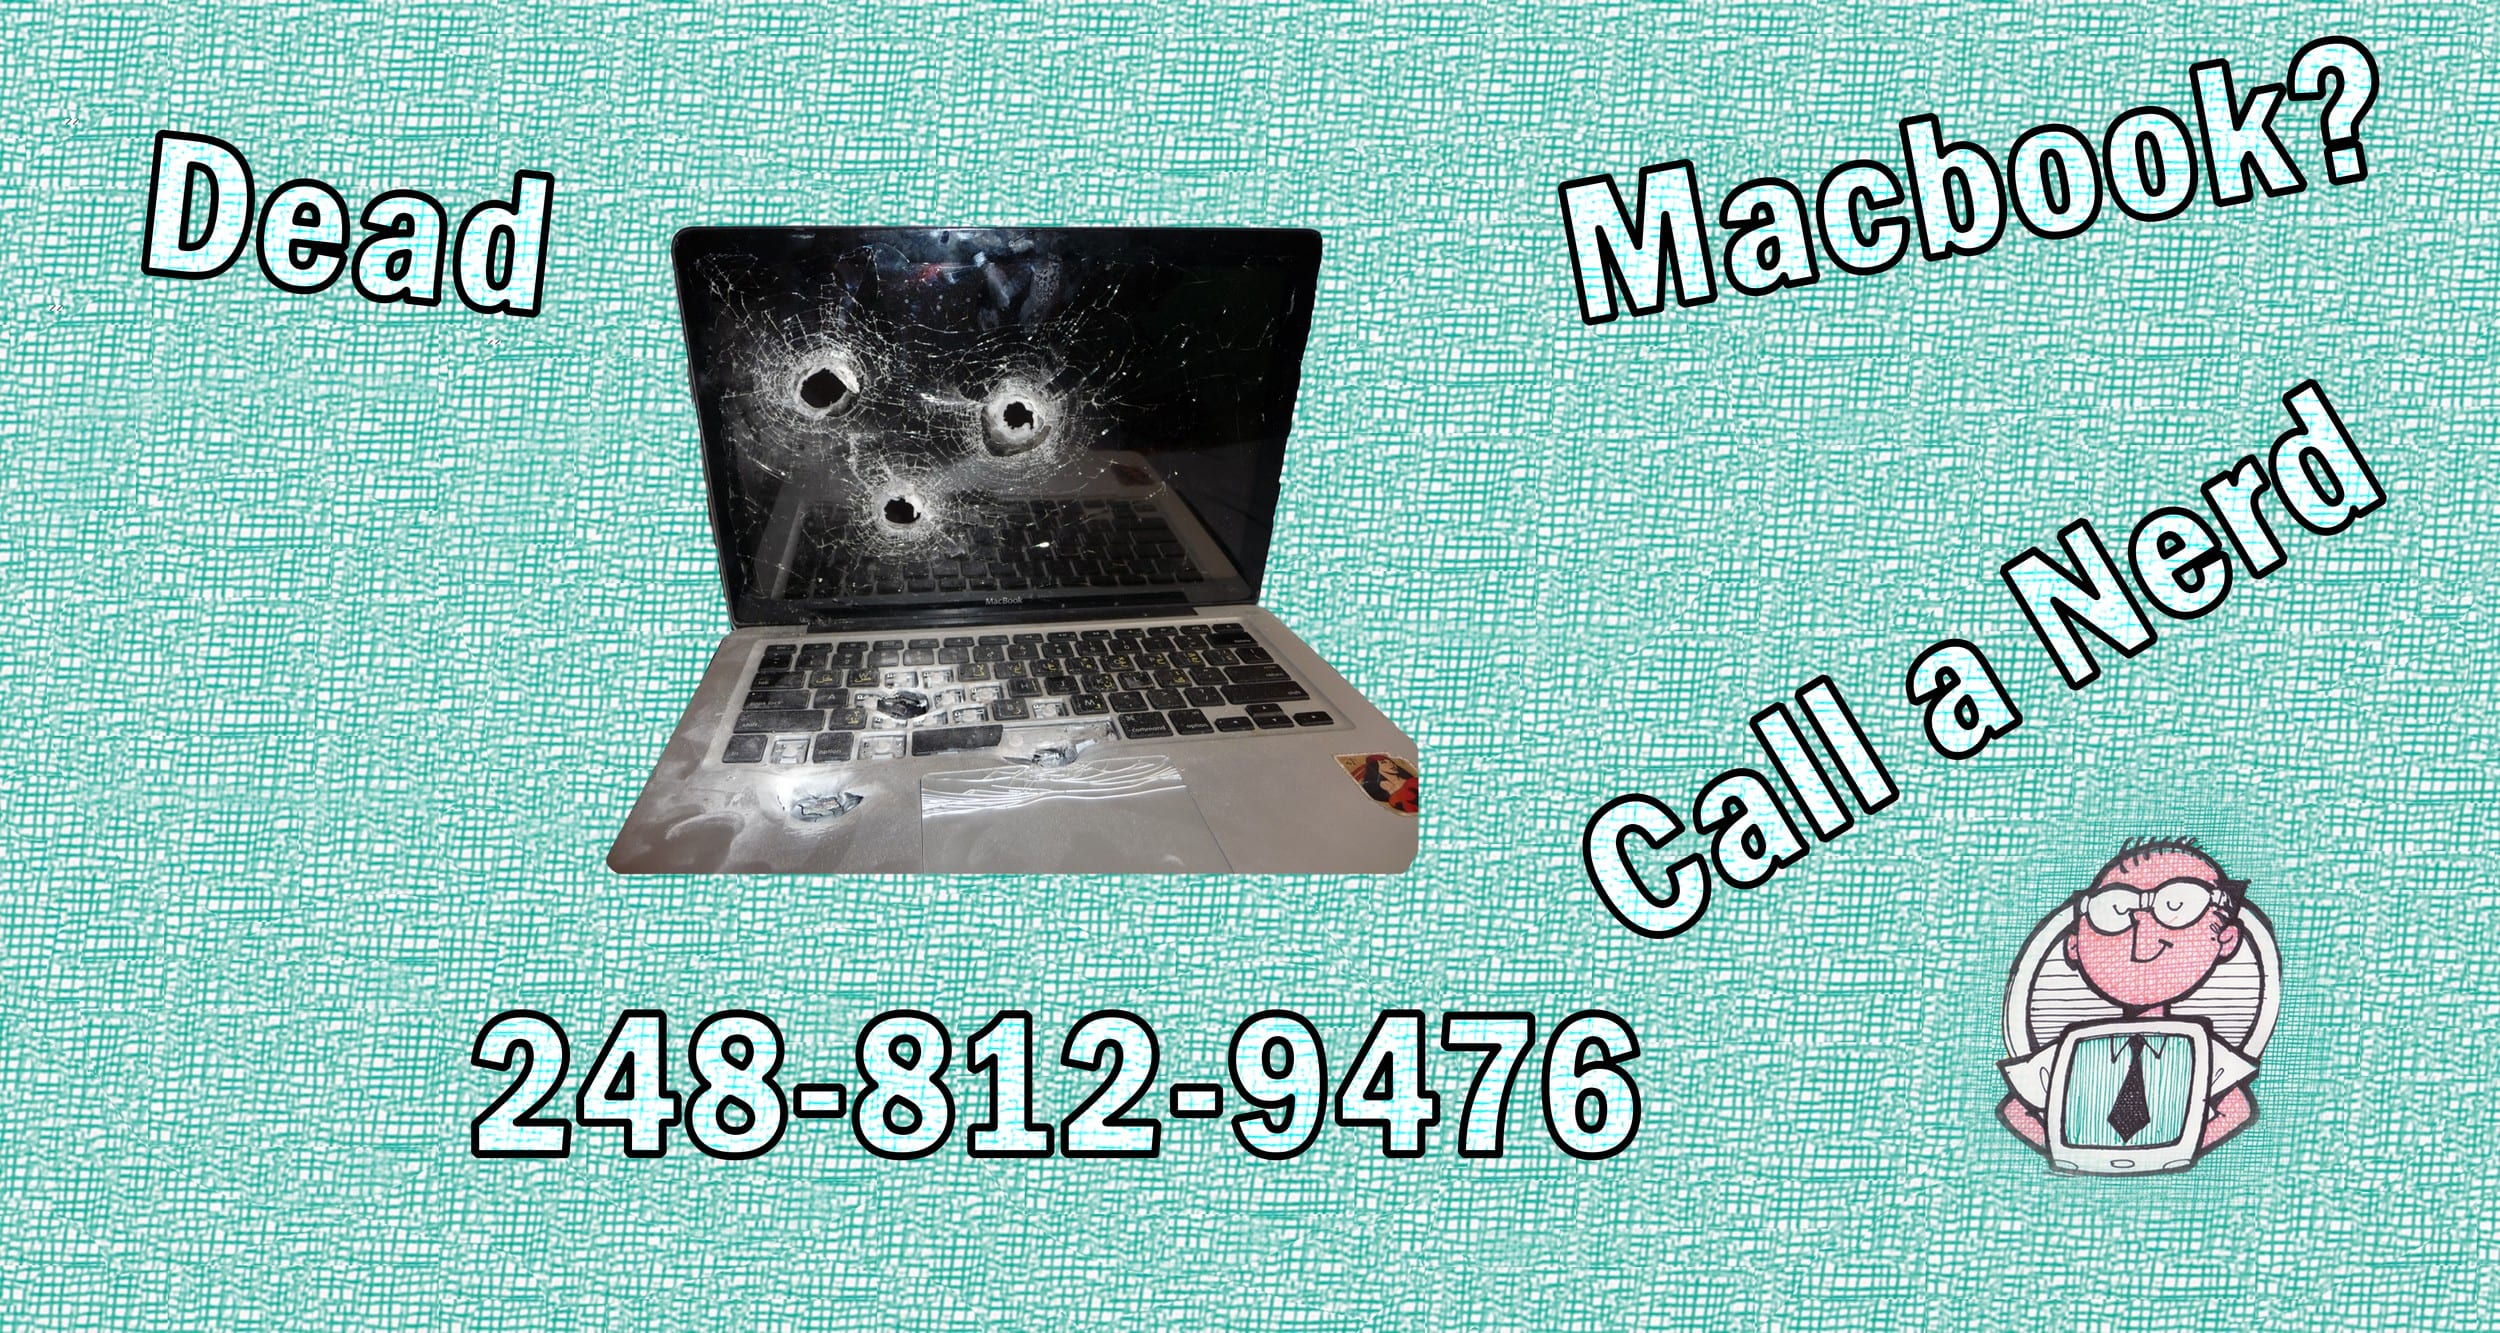 Dead Macbook Pro Repair Macbook Loic Board Repair